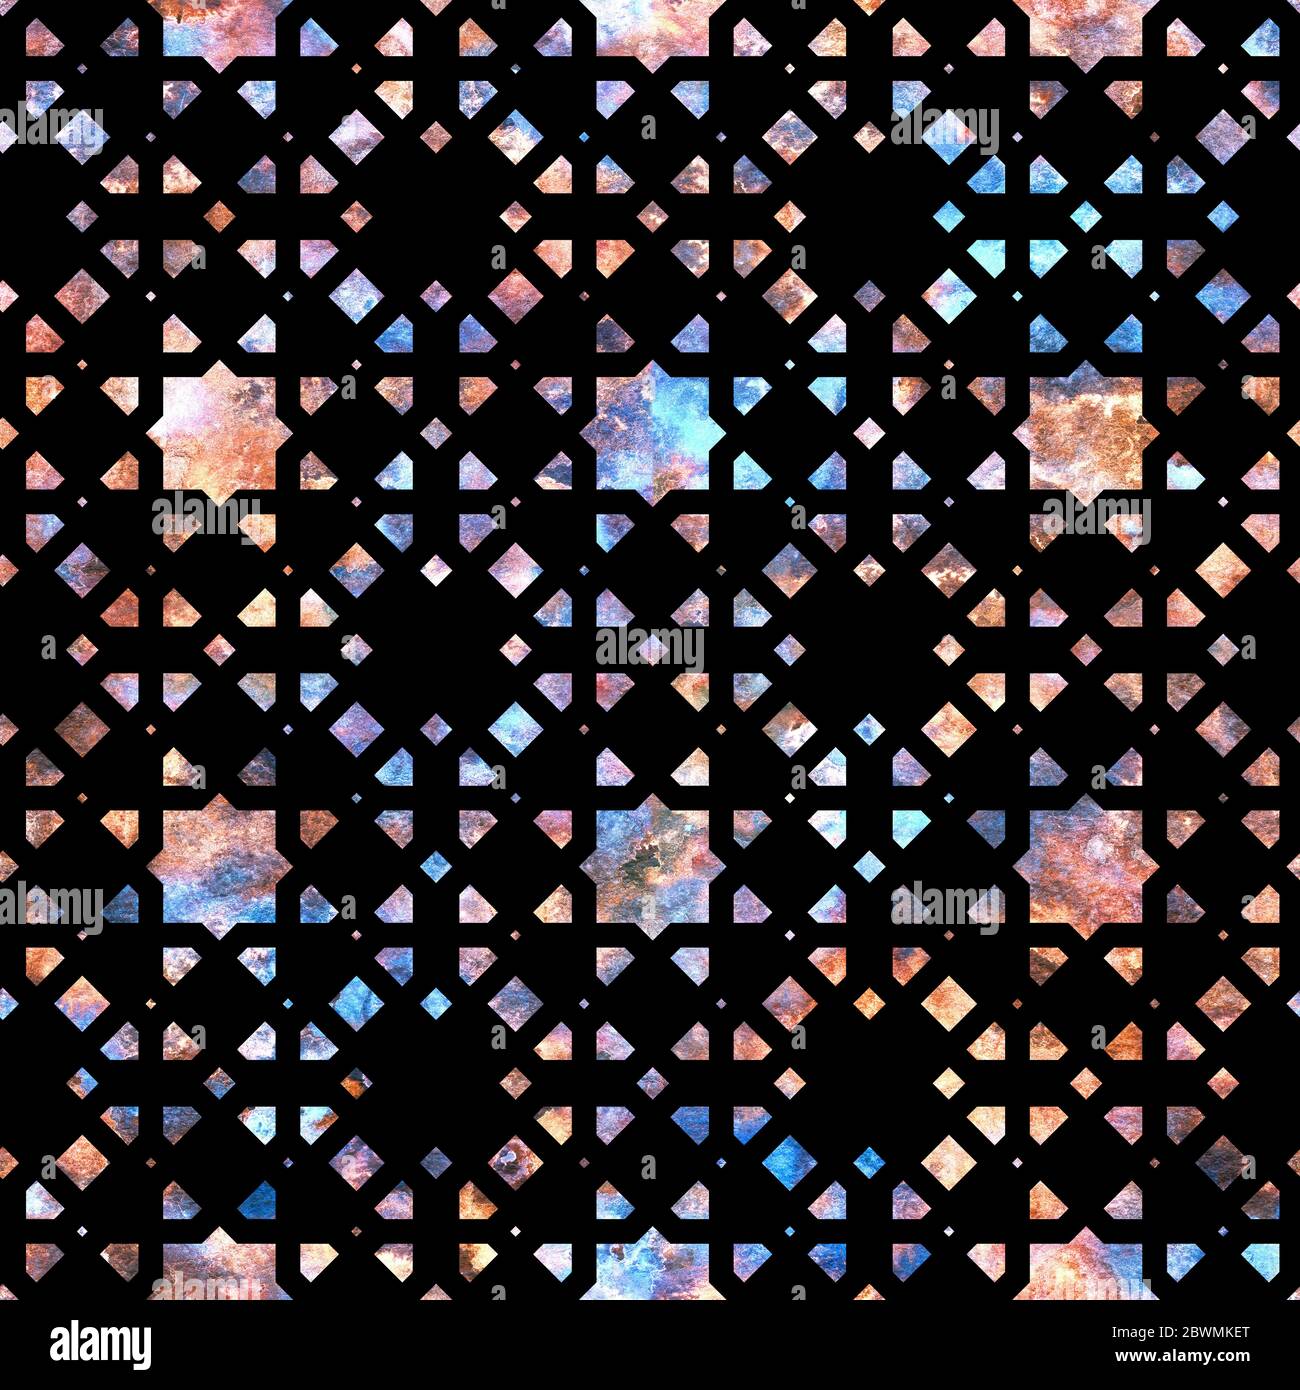 Schmuck, Edelstein, Edelstein-Muster, Textur, Mosaik auf schwarzem Hintergrund im Arabesken-Stil. Nahtloses, farbenfrohes Schmuckmuster mit melierter Textur Stockfoto